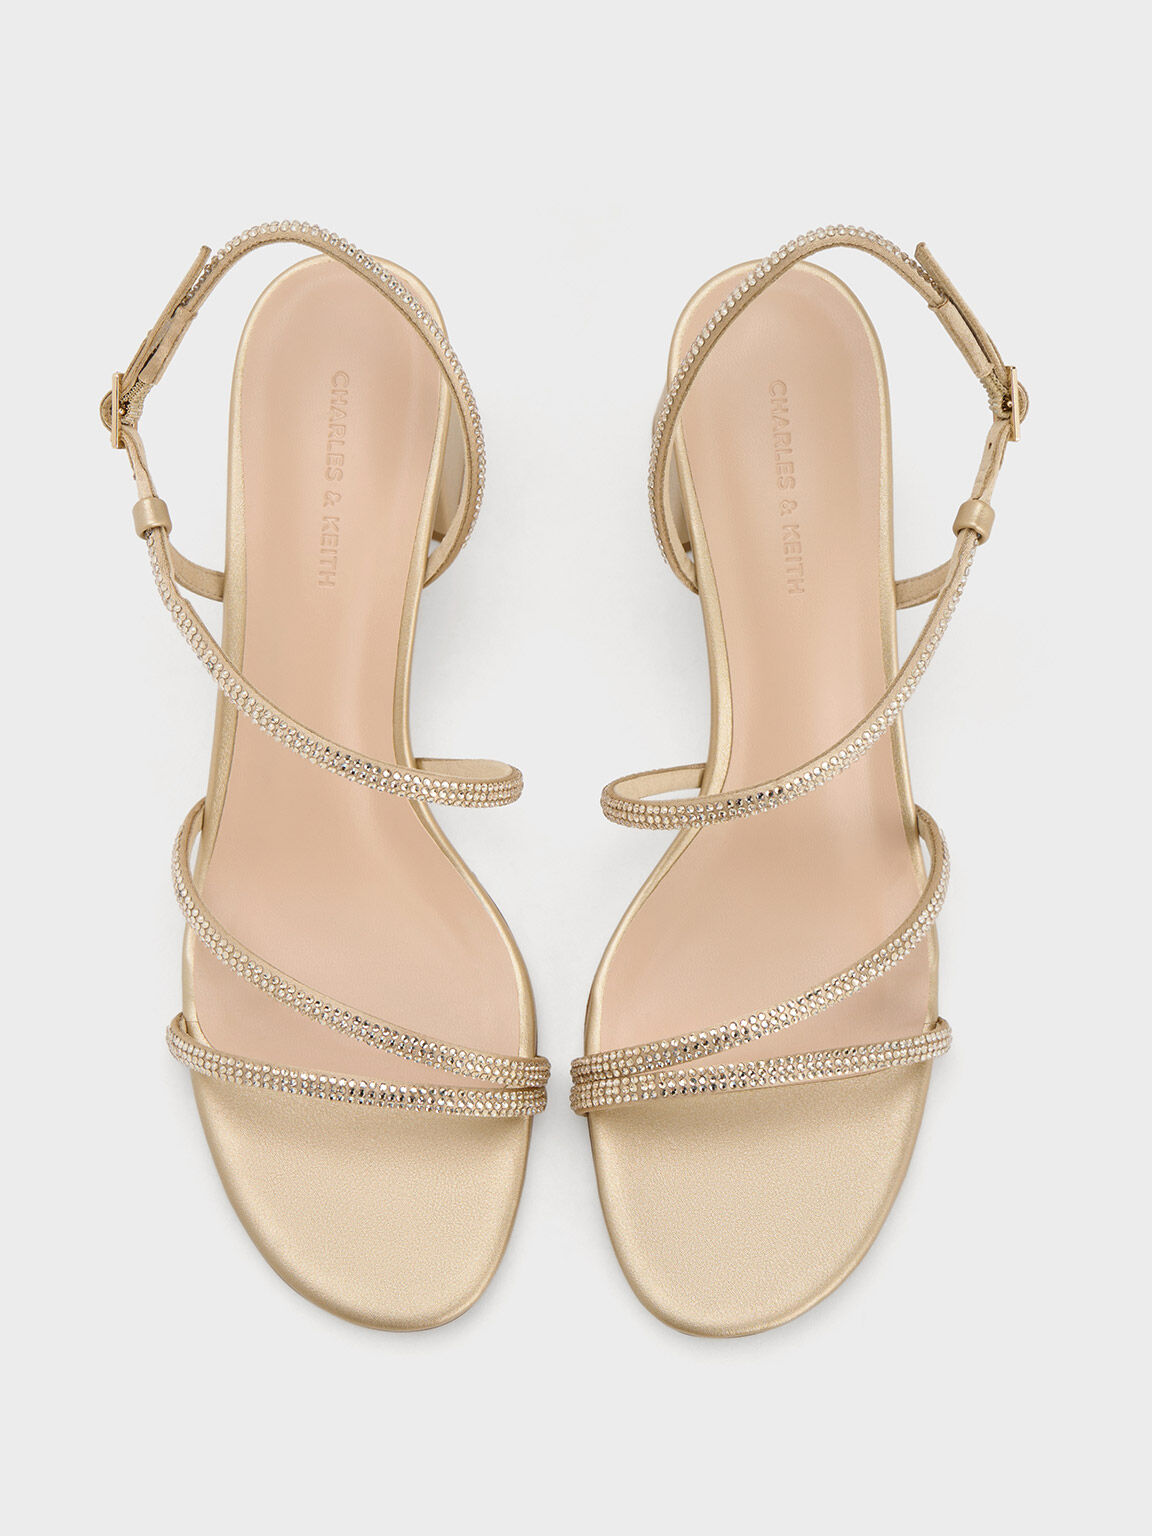 Satin Crystal-Embellished Block-Heel Strappy Sandals, Gold, hi-res